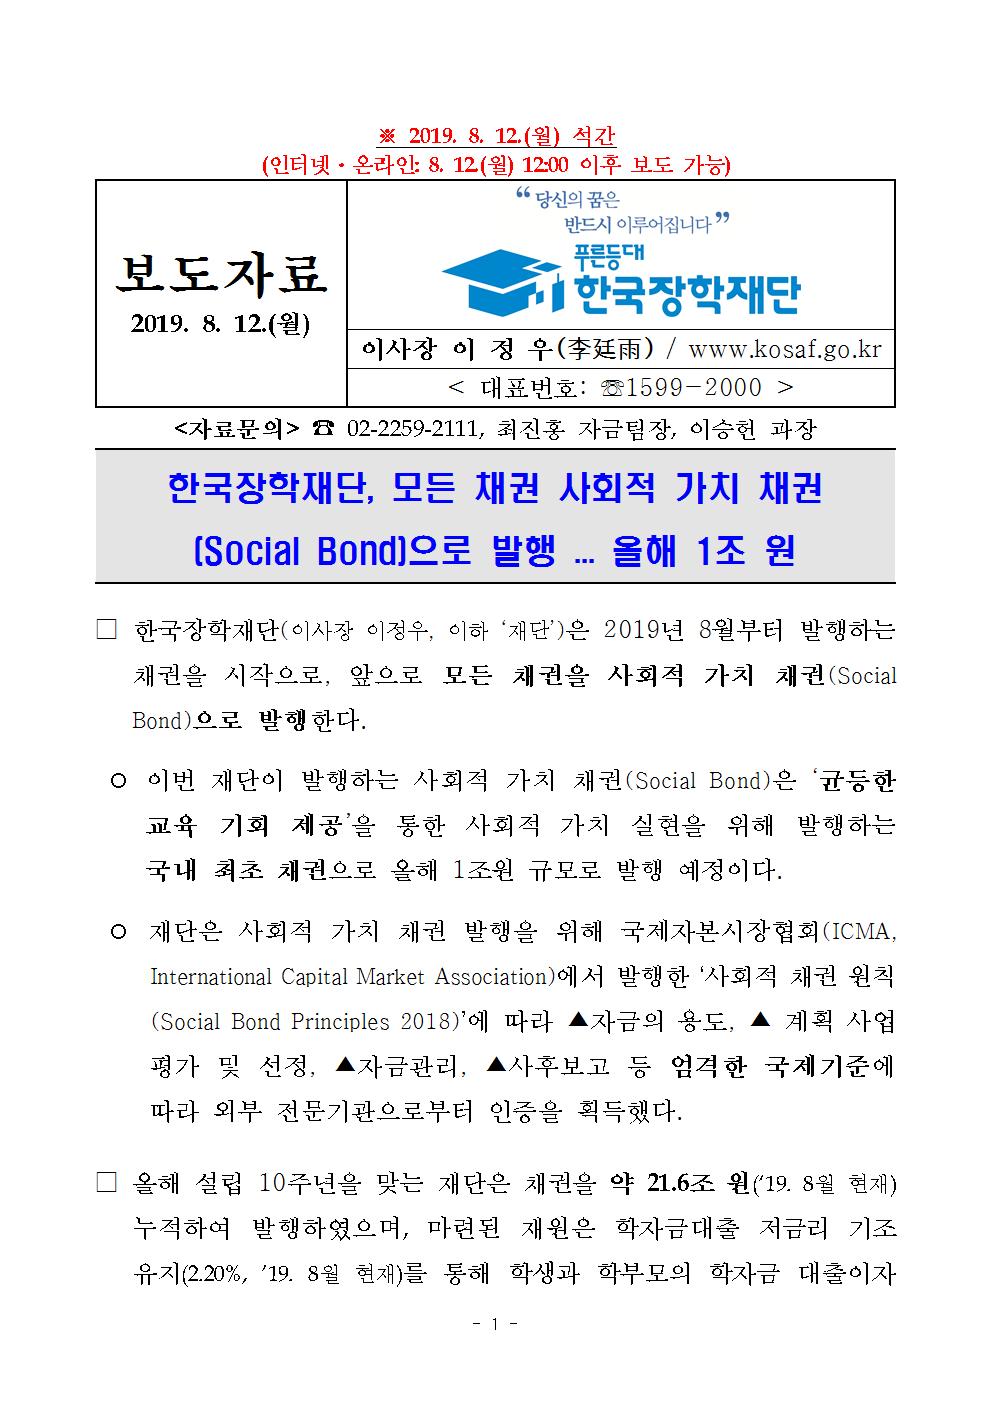 08-12(월)[보도자료] 한국장학재단 모든 채권 사회적 가치 채권(Social Bond)으로 발행001.jpg